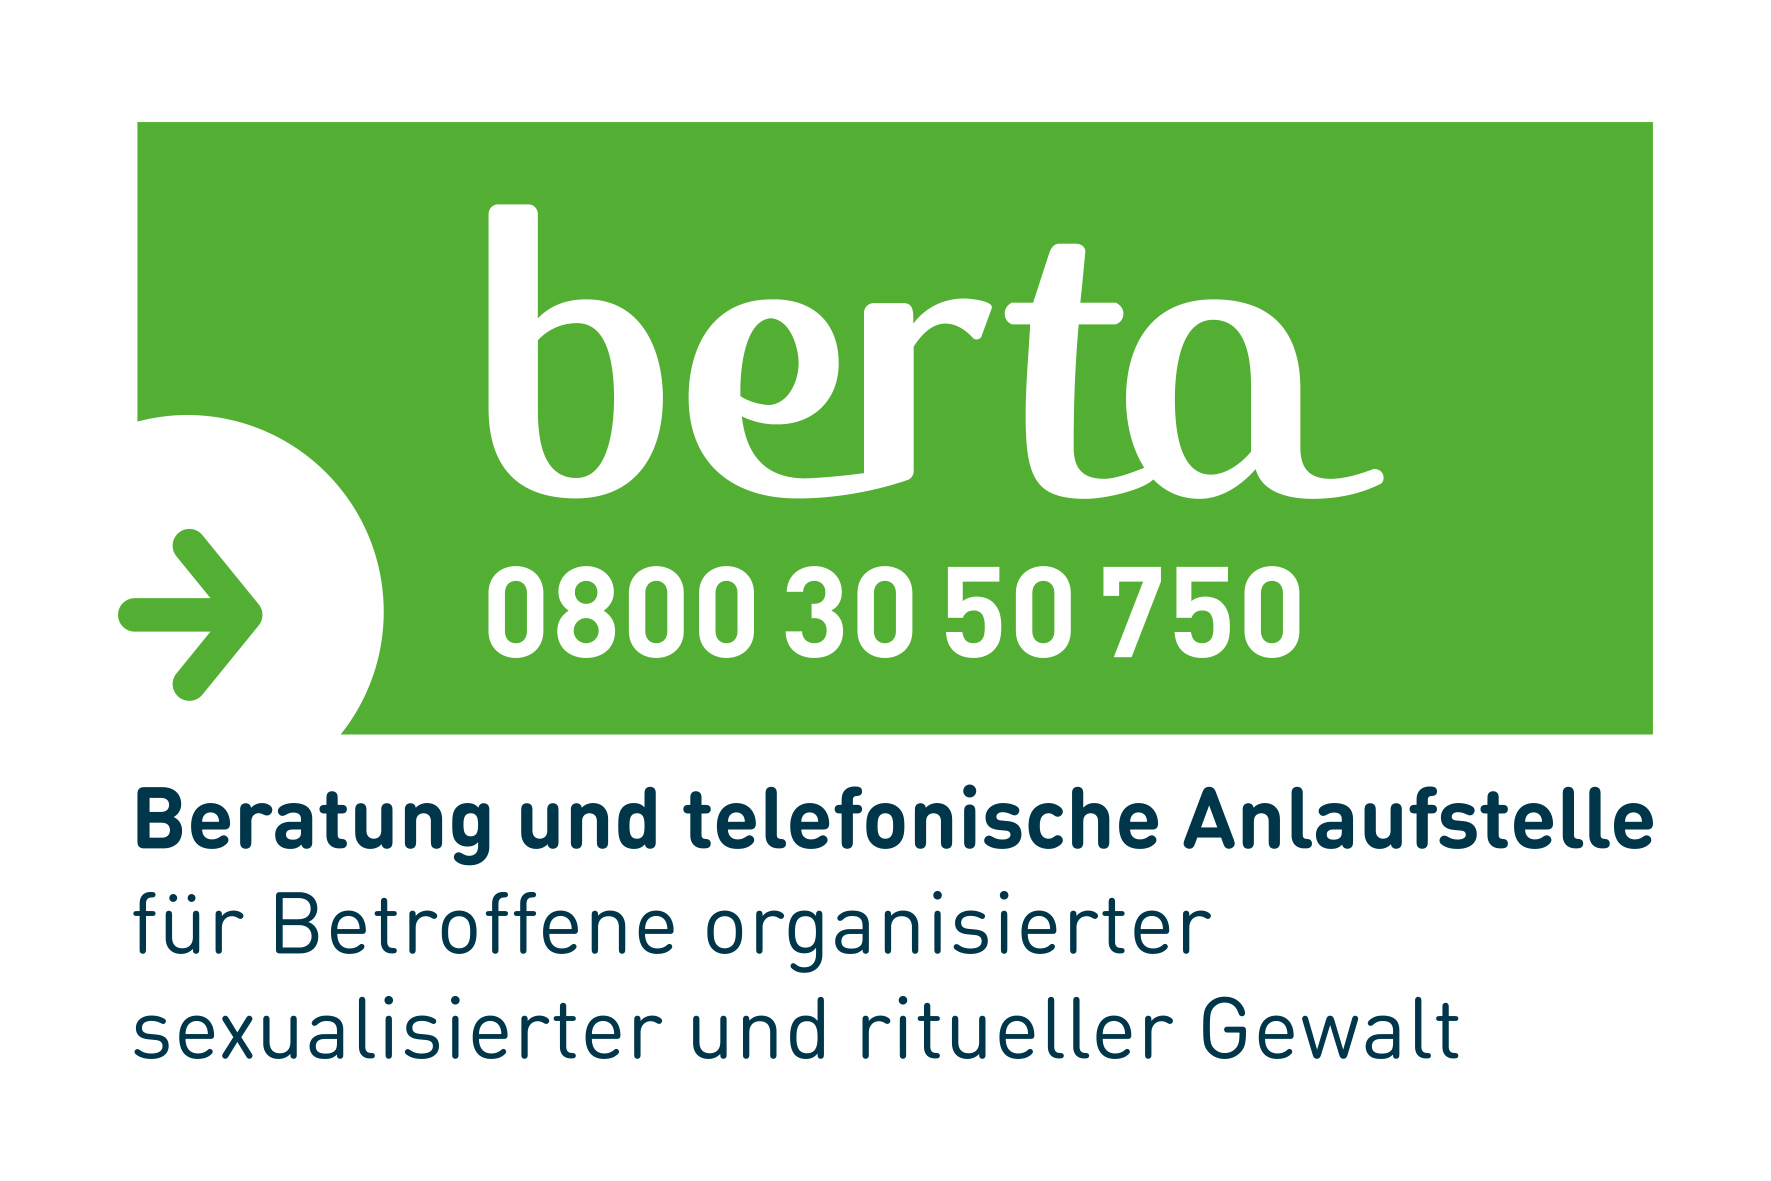 2 Jahre Hilfetelefon „berta“ für Betroffene organisierter sexualisierter und ritueller Gewalt